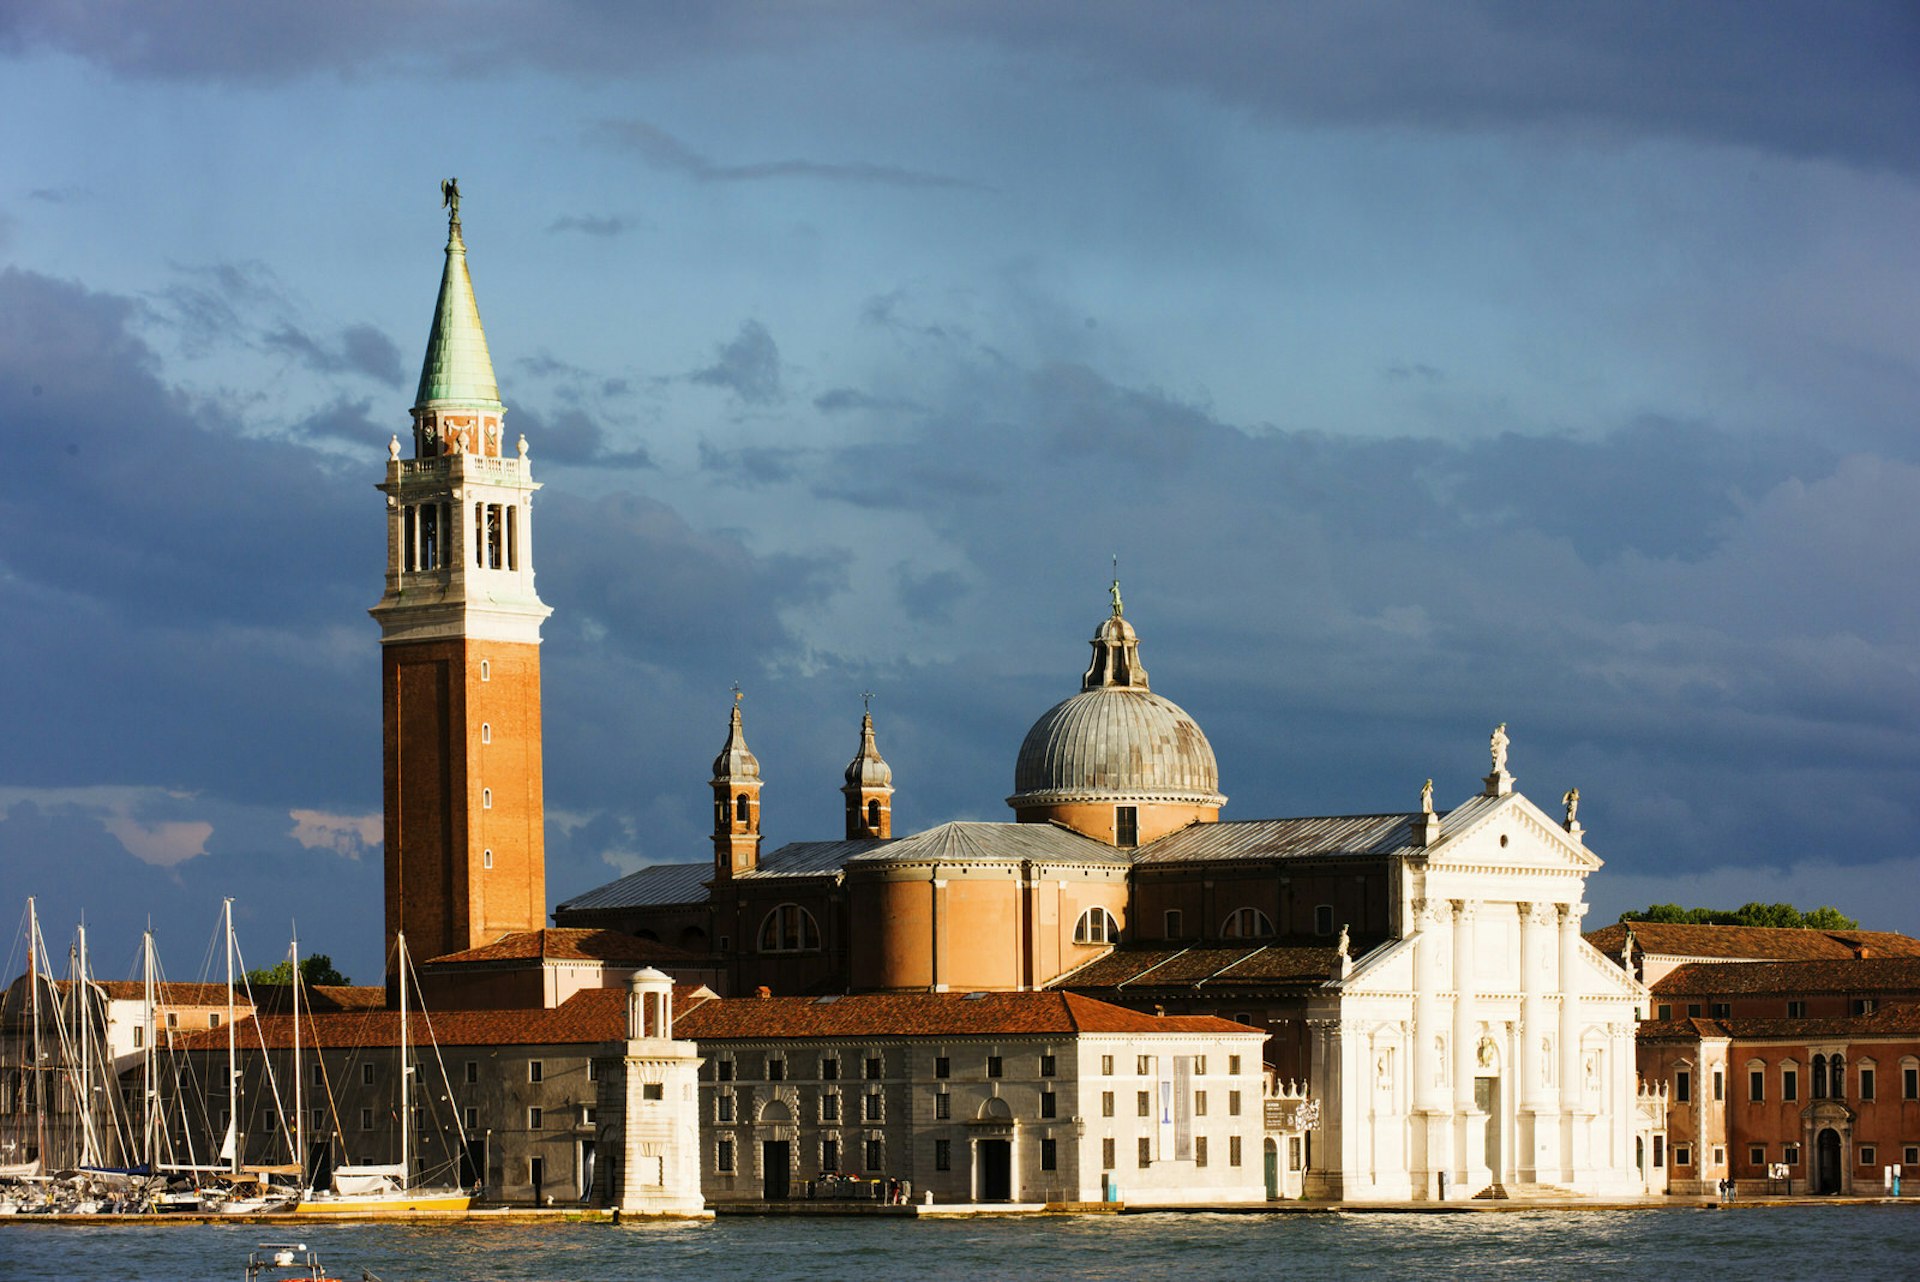 San Giorgio Maggiore church